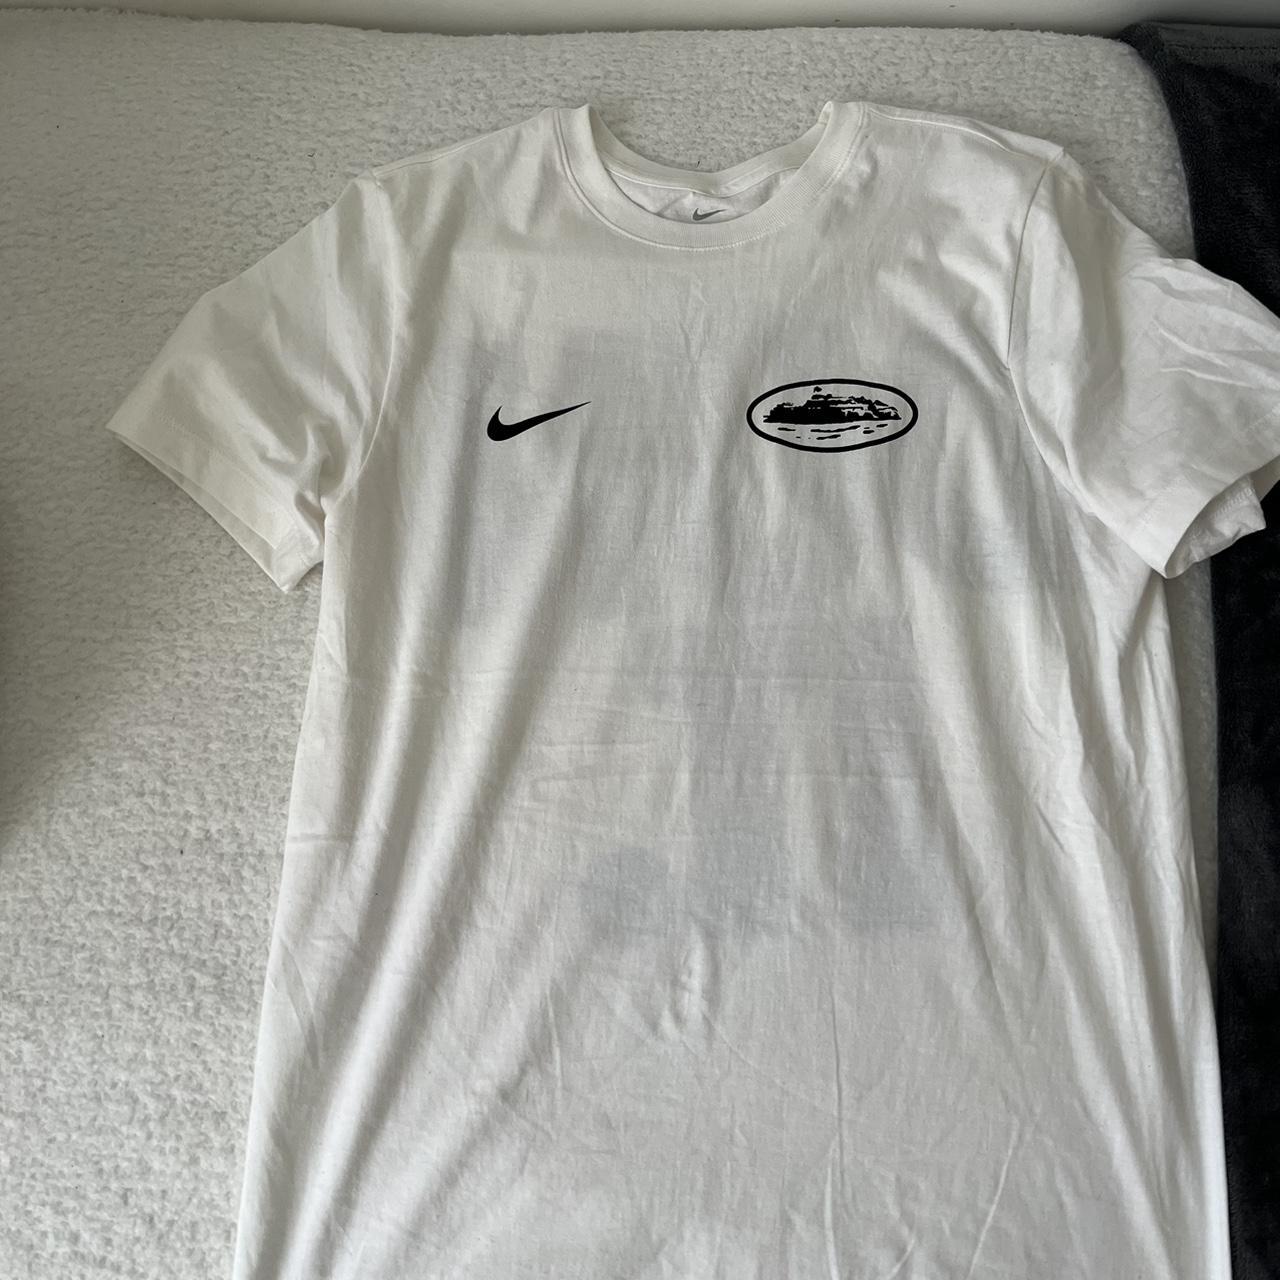 SUPER RARE Nike x CORTIEZ T shirt!! Has never been... - Depop